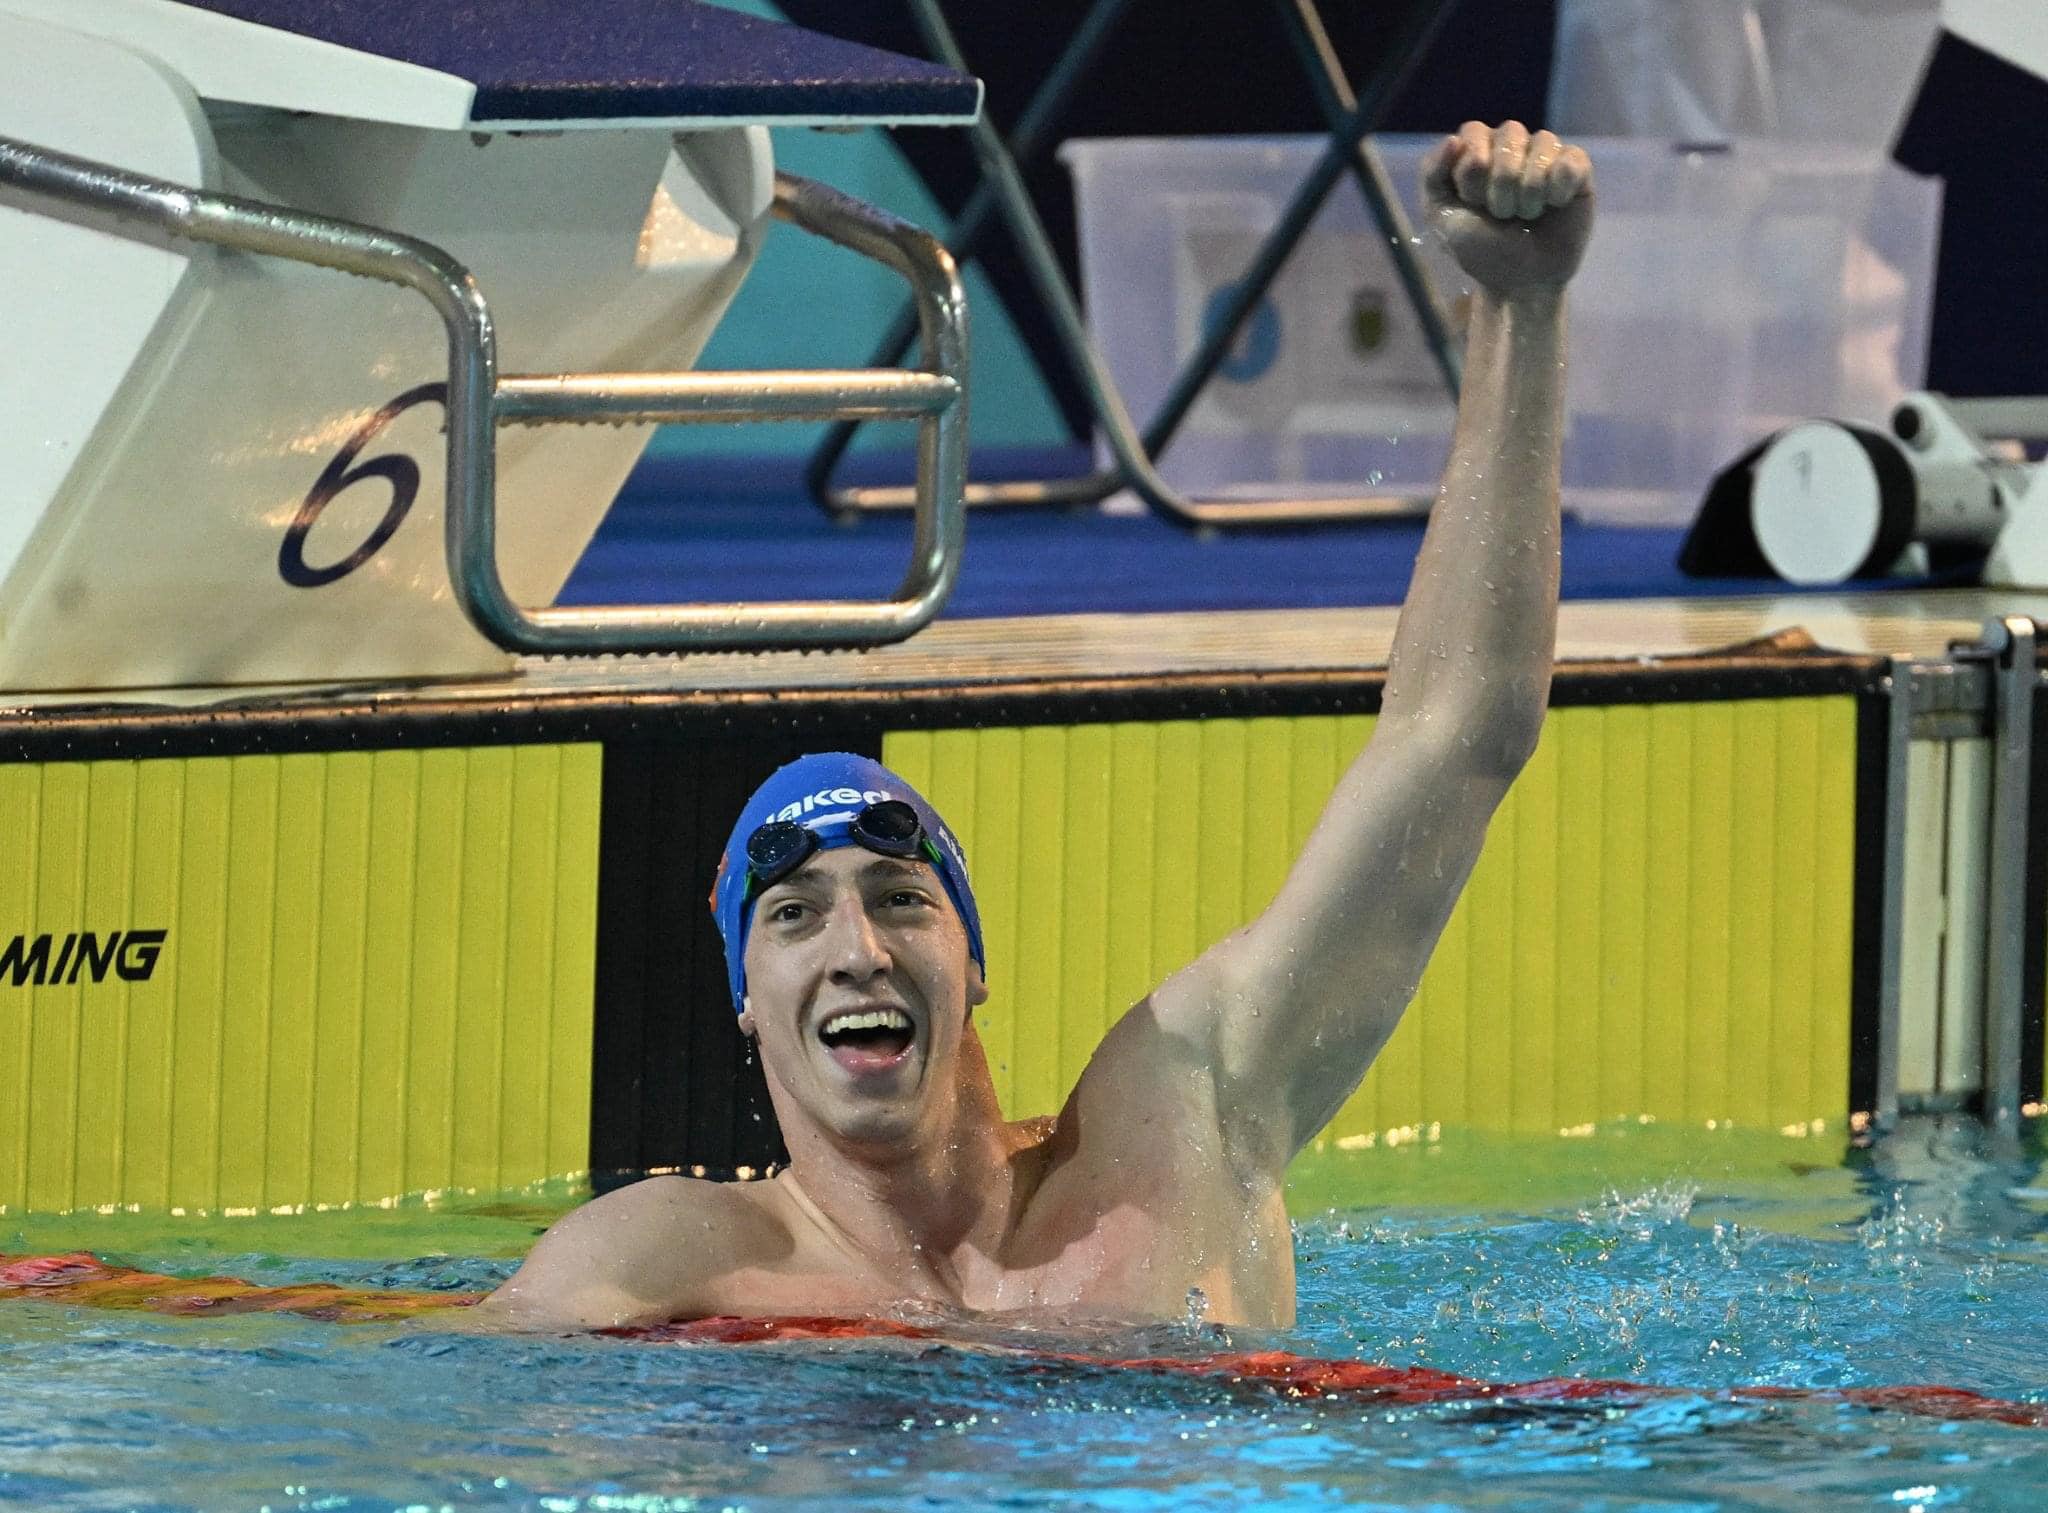 Alberto Amodeo, dai successi ai Mondiali di Nuoto al futuro prossimo: sogno una laurea e un equilibrio fra sport e vita